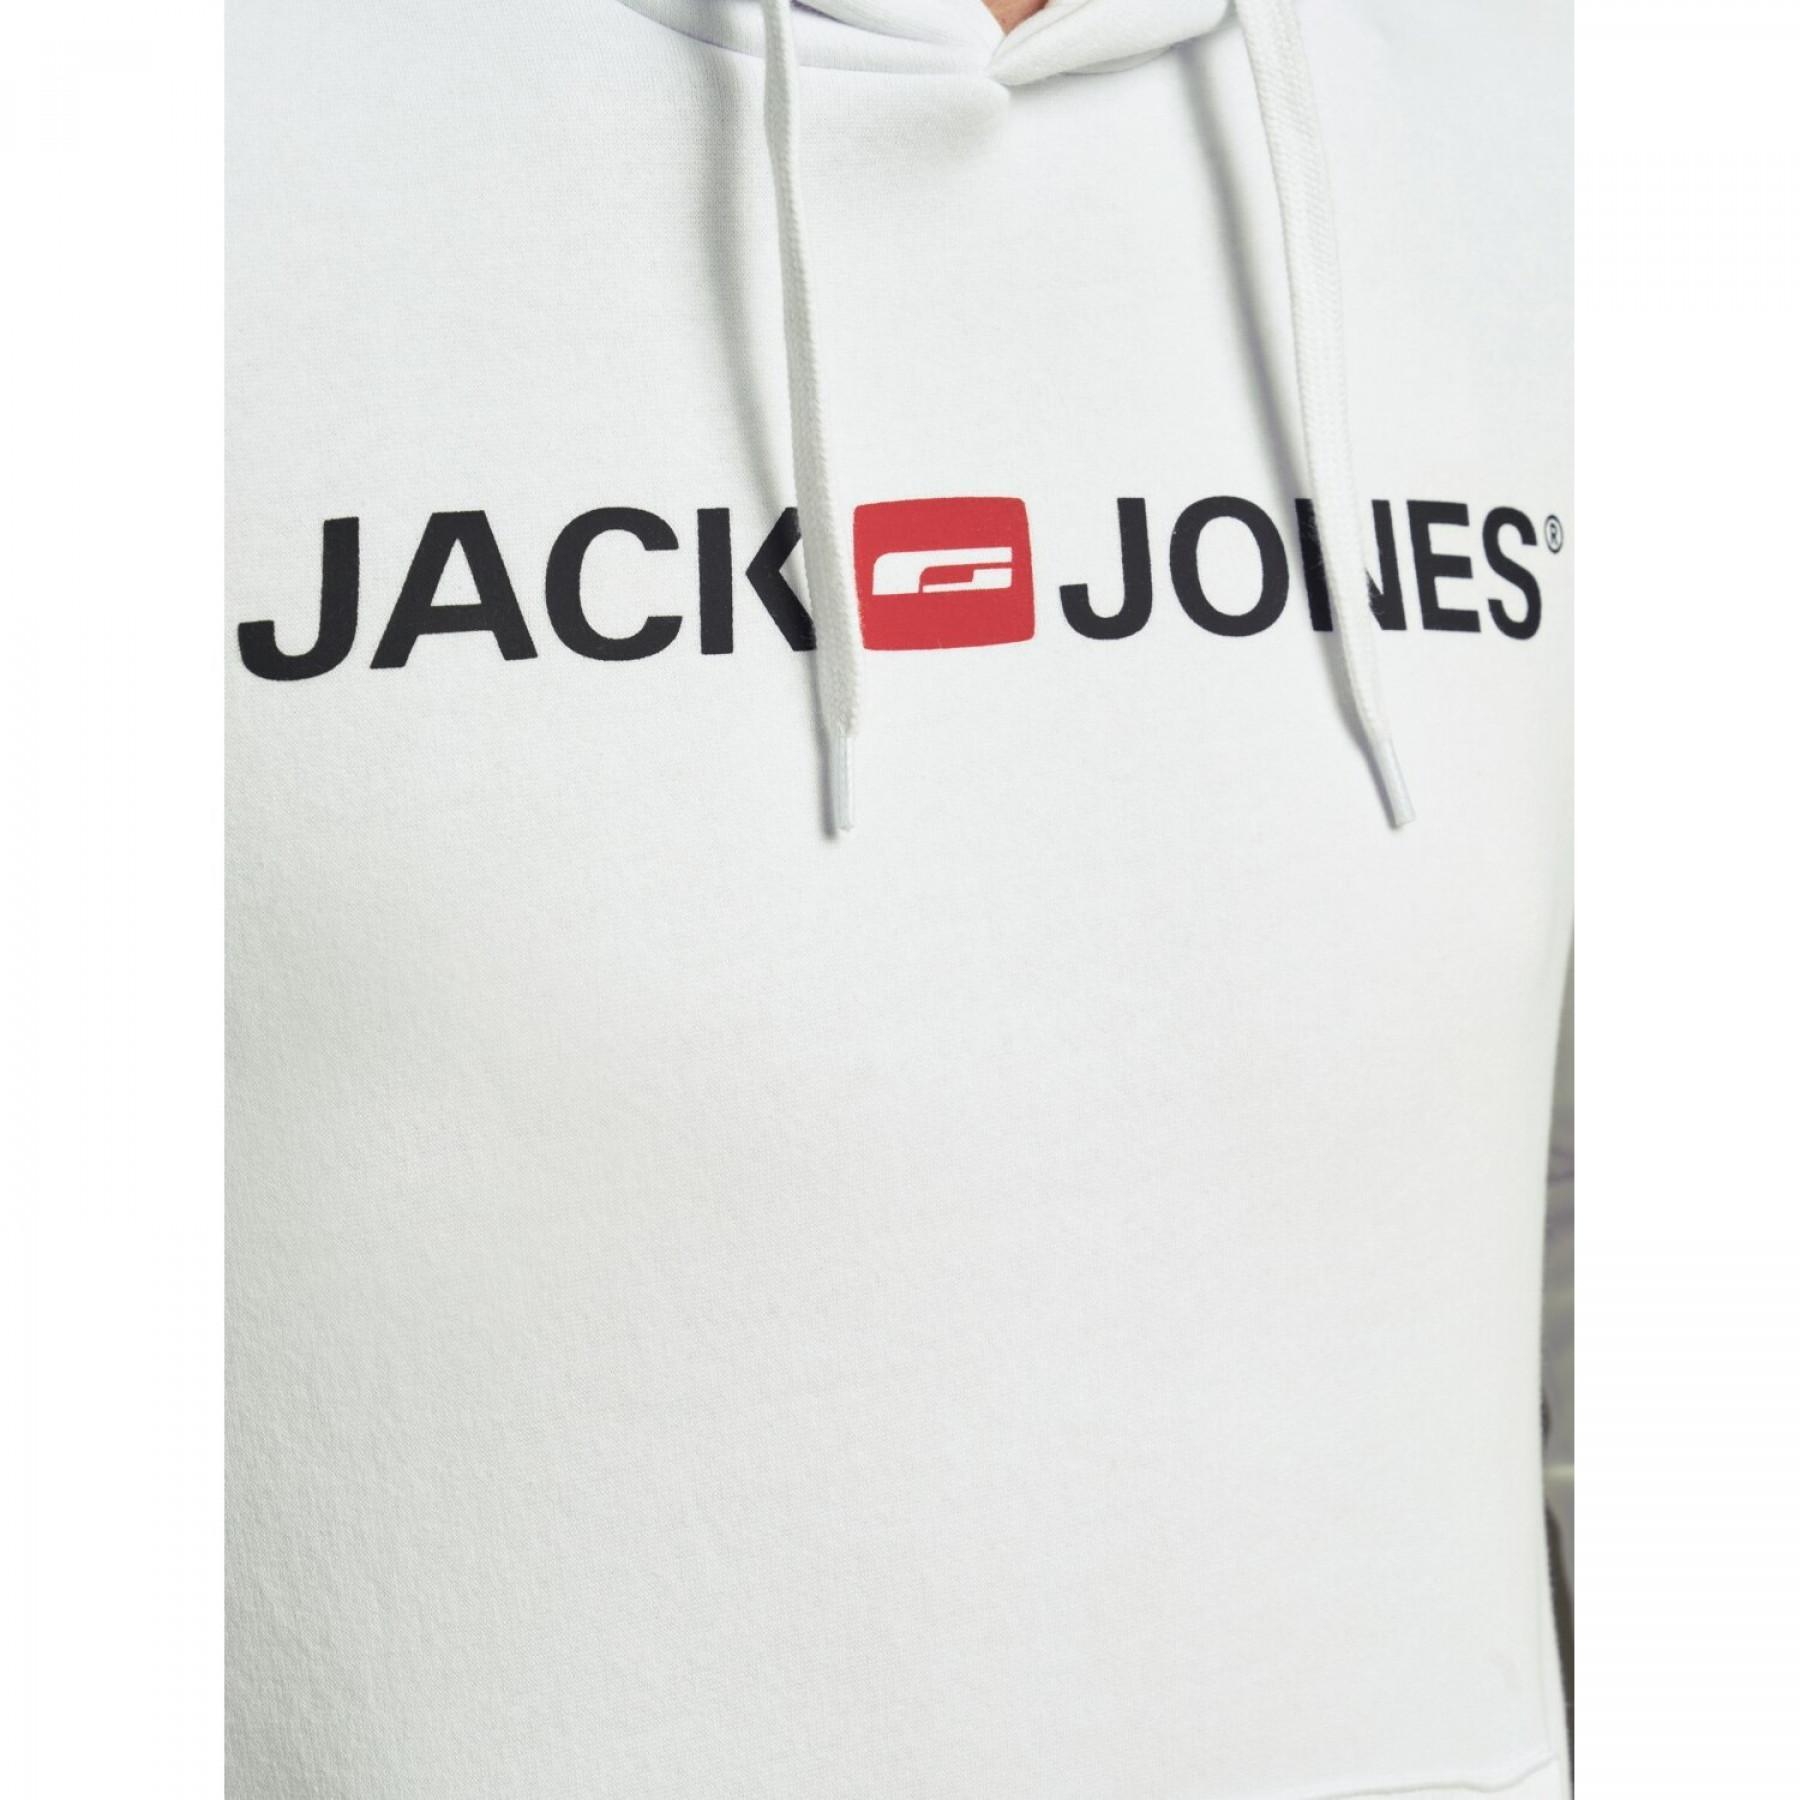 Hoodie Jack & Jones Corp old logo